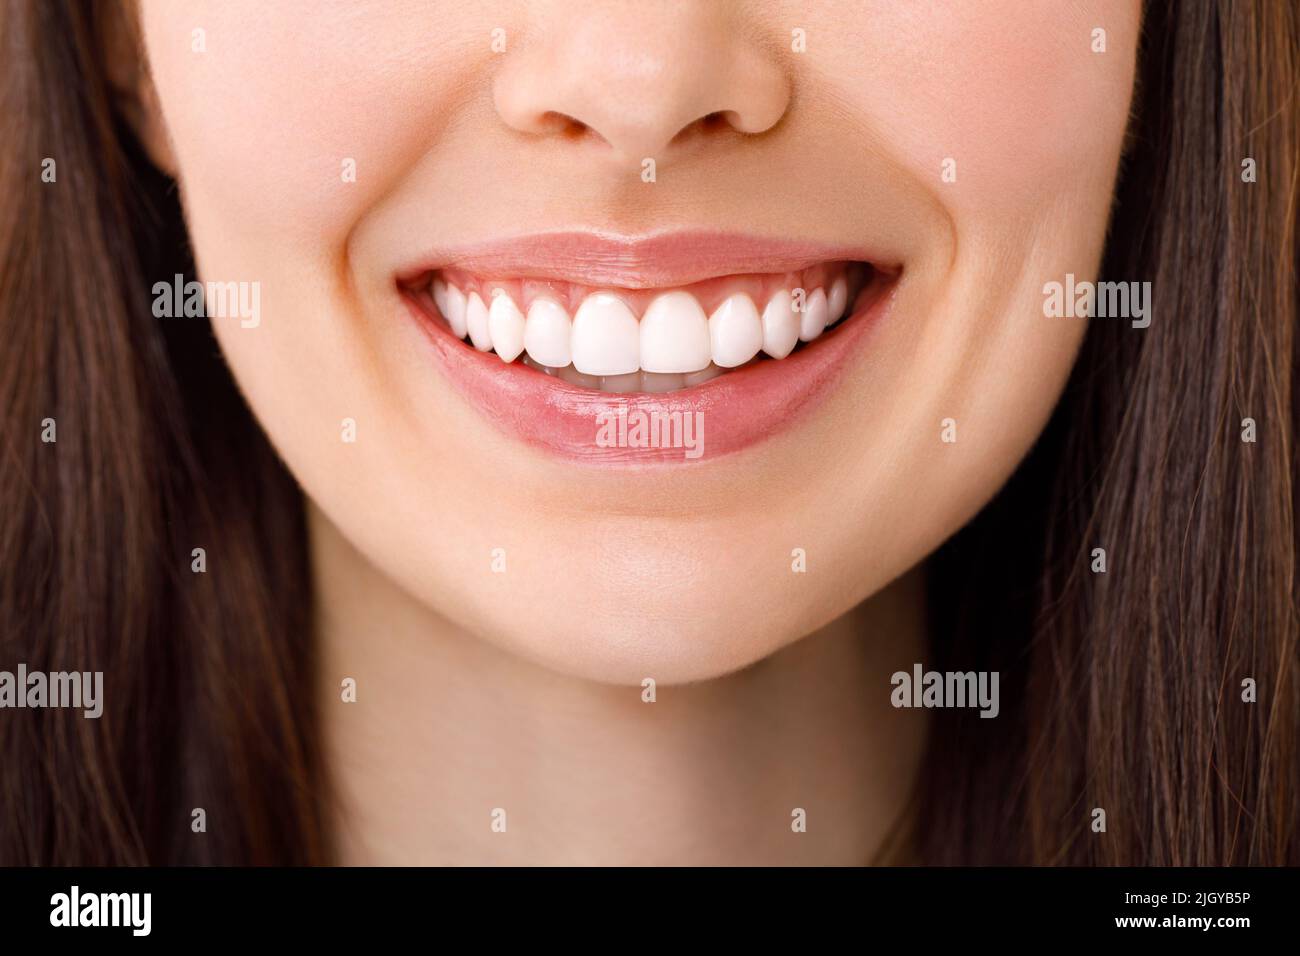 Eine schöne Frau lächelt. Ein Lächeln mit weißen Zähnen. Nahaufnahme des Bildes. Stockfoto